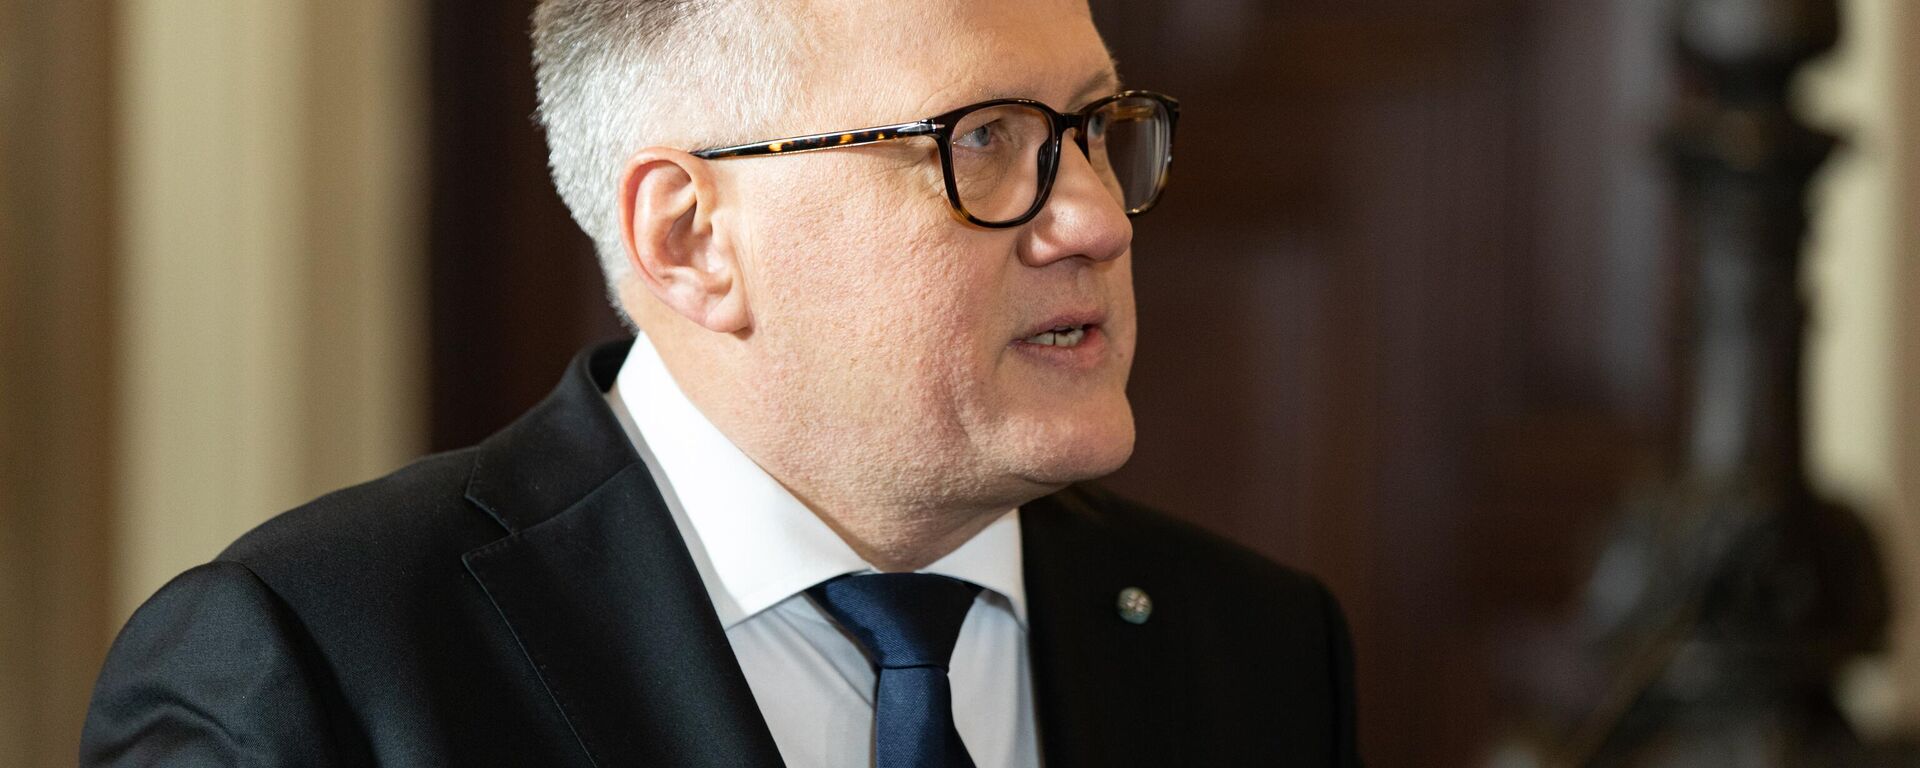 Министр финансов Латвии Арвилс Ашераденс представил в Сейм проект бюджета на 2023 год - Sputnik Латвия, 1920, 16.03.2023